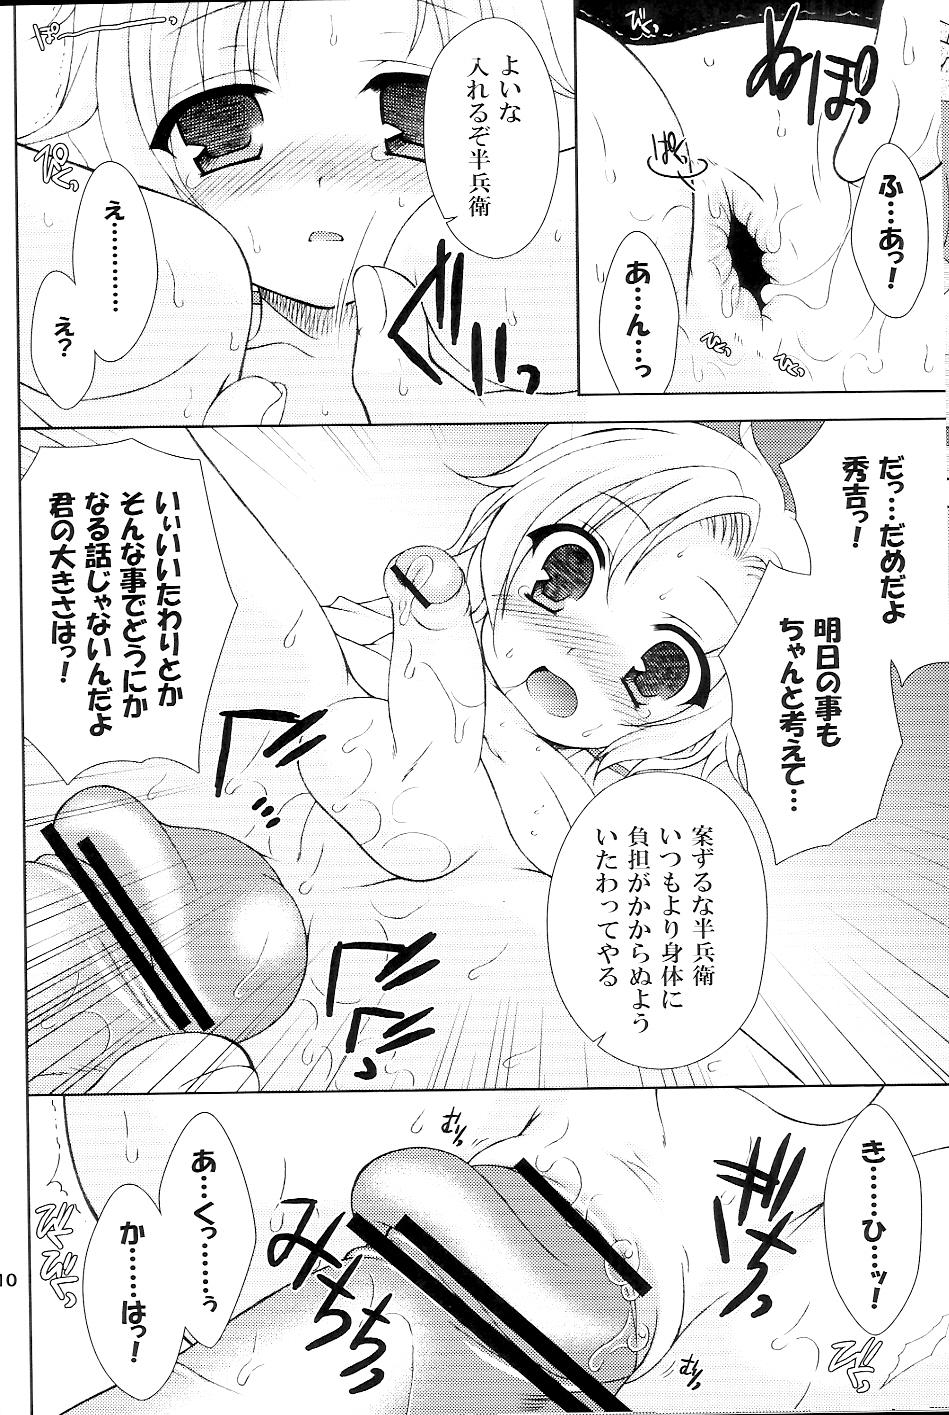 Girlfriends Sairoku March - Sengoku basara Magrinha - Page 9